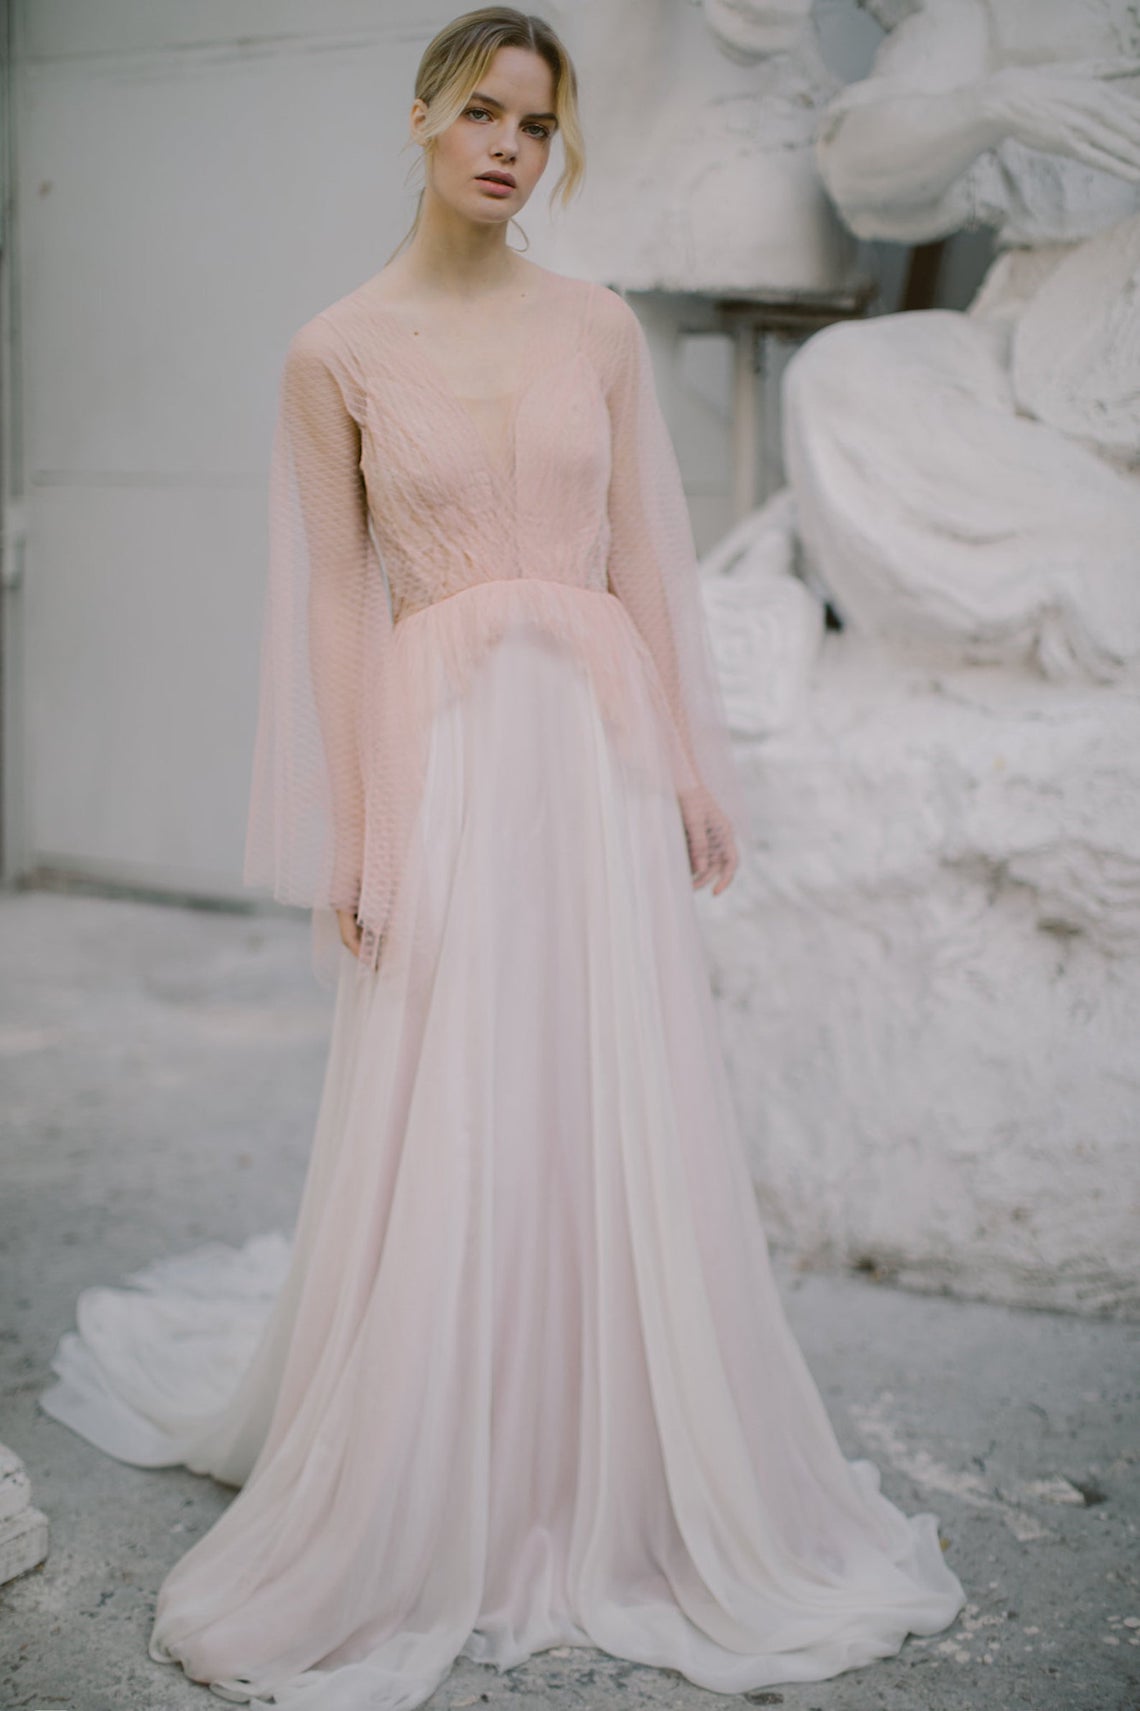 Mywony Bridal Blush Pink Wedding Dress Best Pink Wedding Dresses for 2021 2022 Brides Bridal Musings - 30 chiếc áo dài cưới màu hồng dành cho cô dâu yêu thích sắc màu